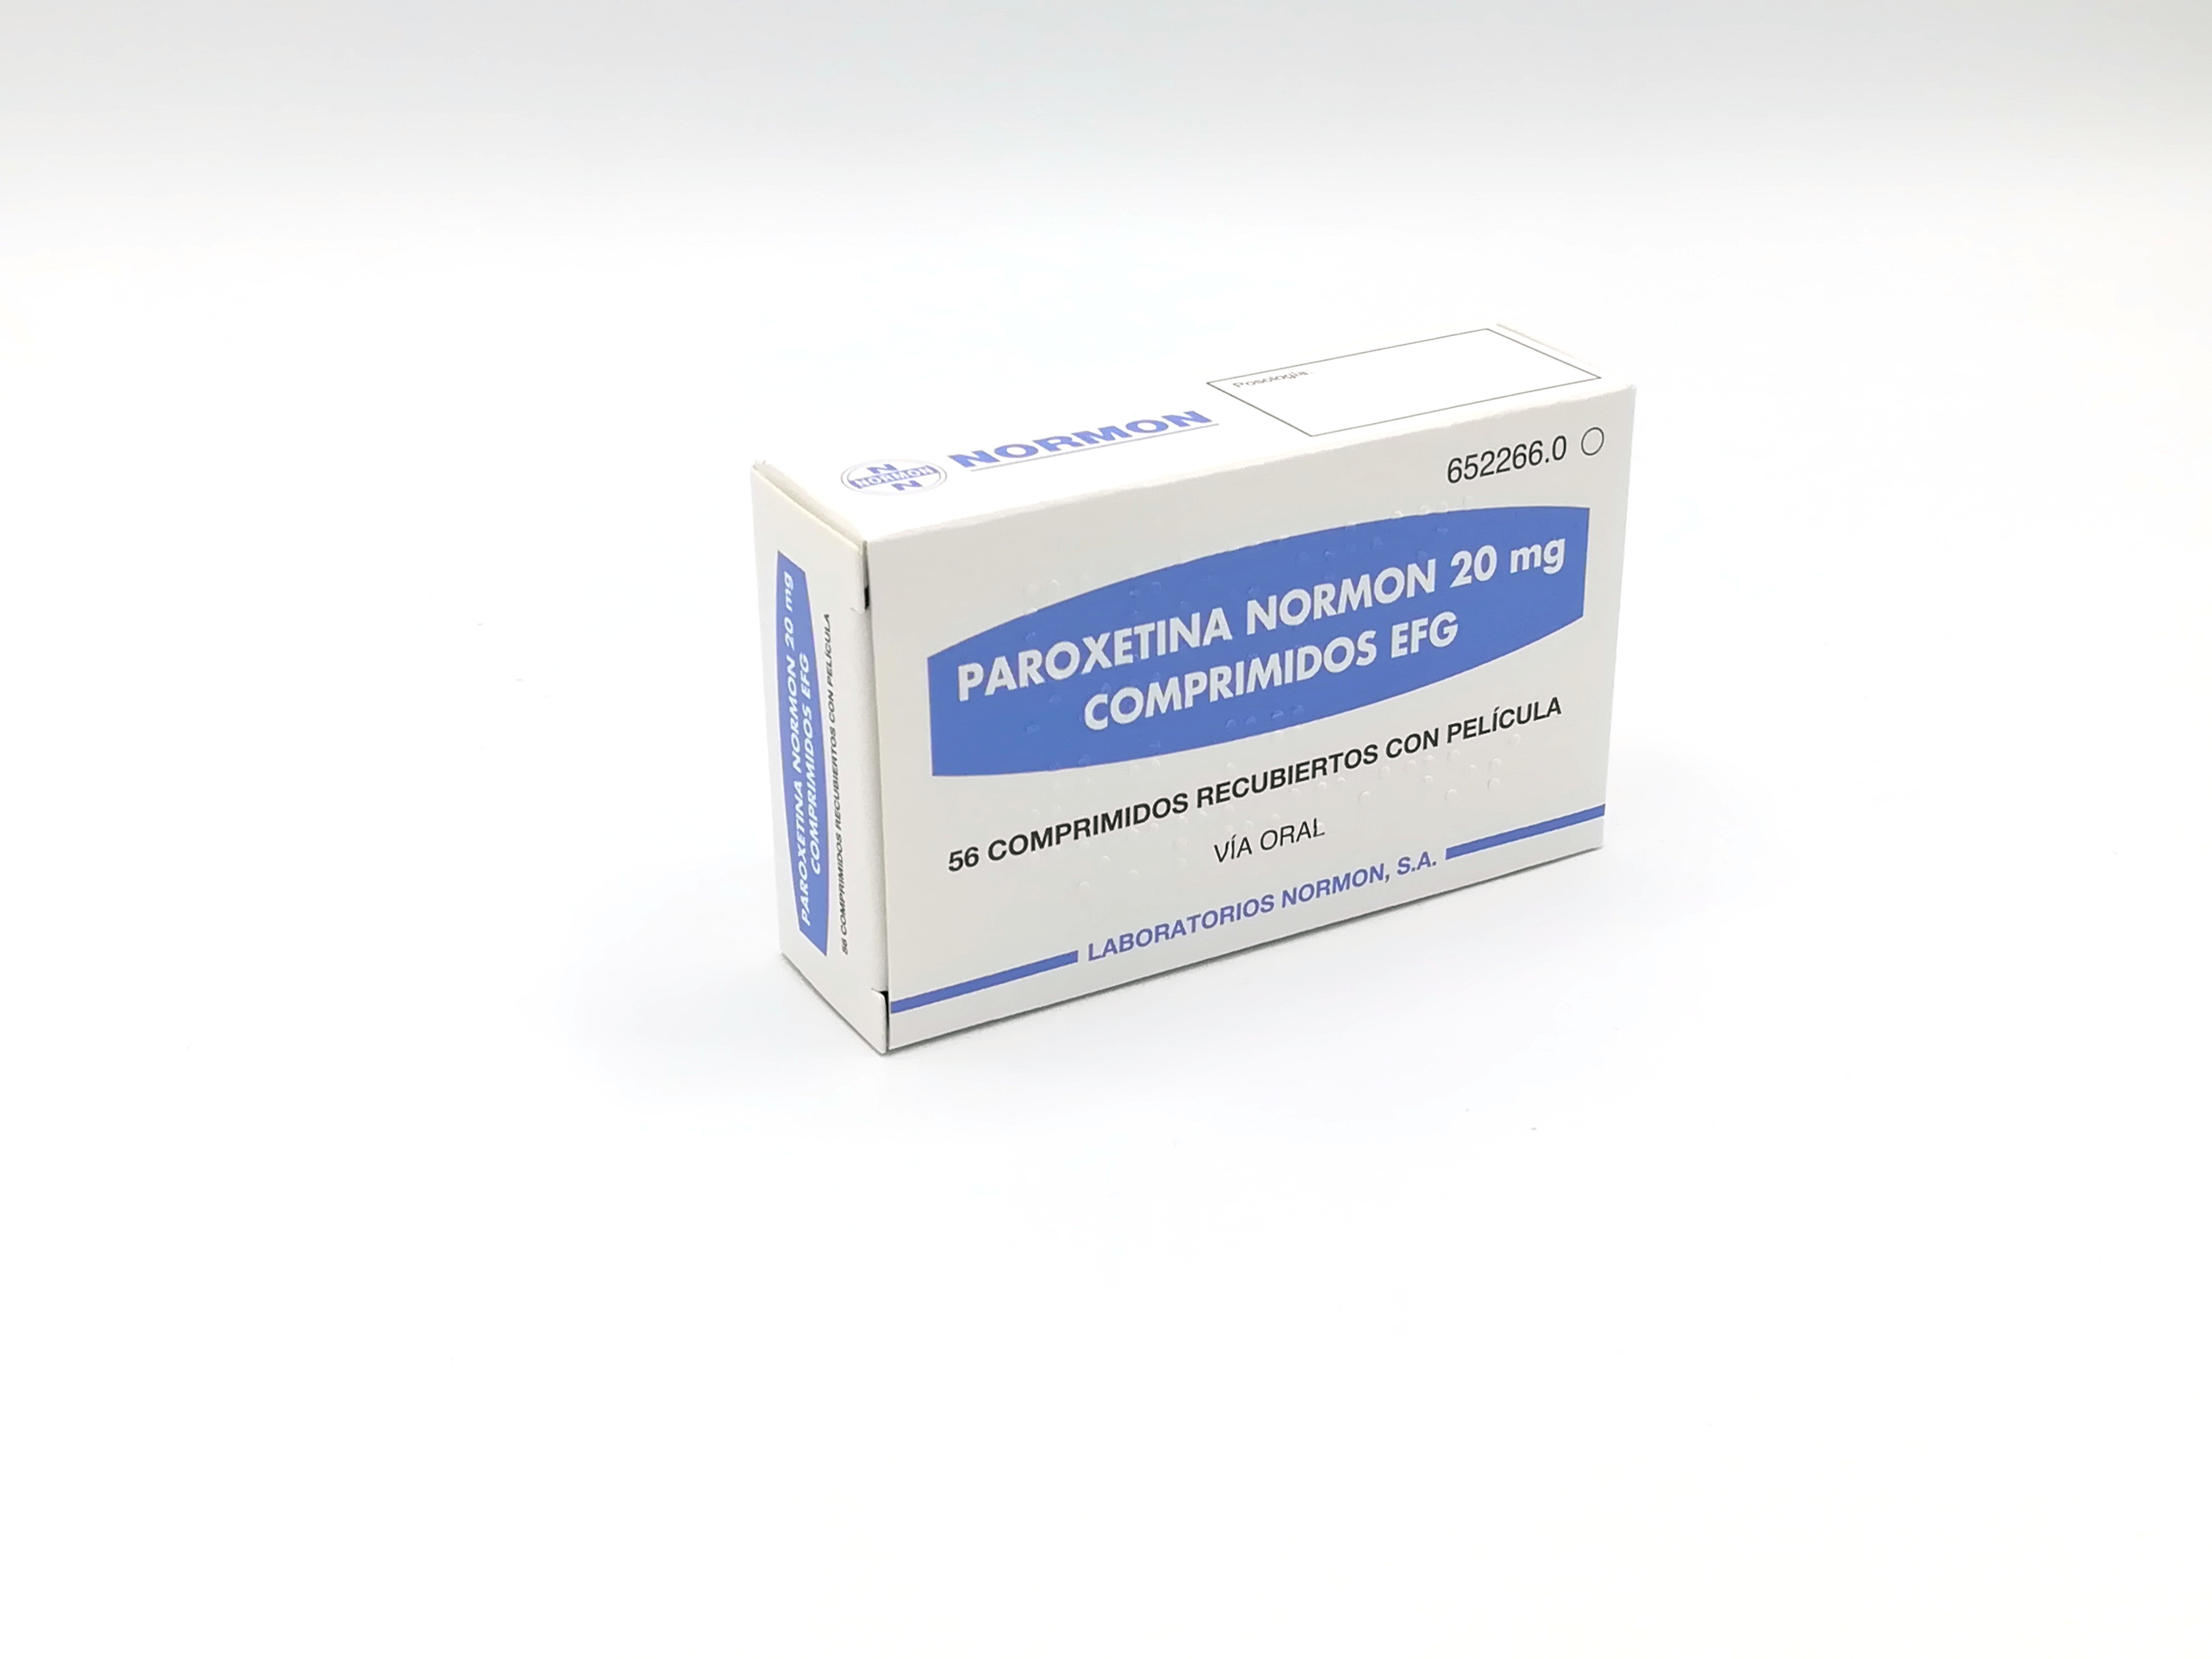 PAROXETINA NORMON EFG 20 mg 28 COMPRIMIDOS RECUBIERTOS - Farmacéuticos